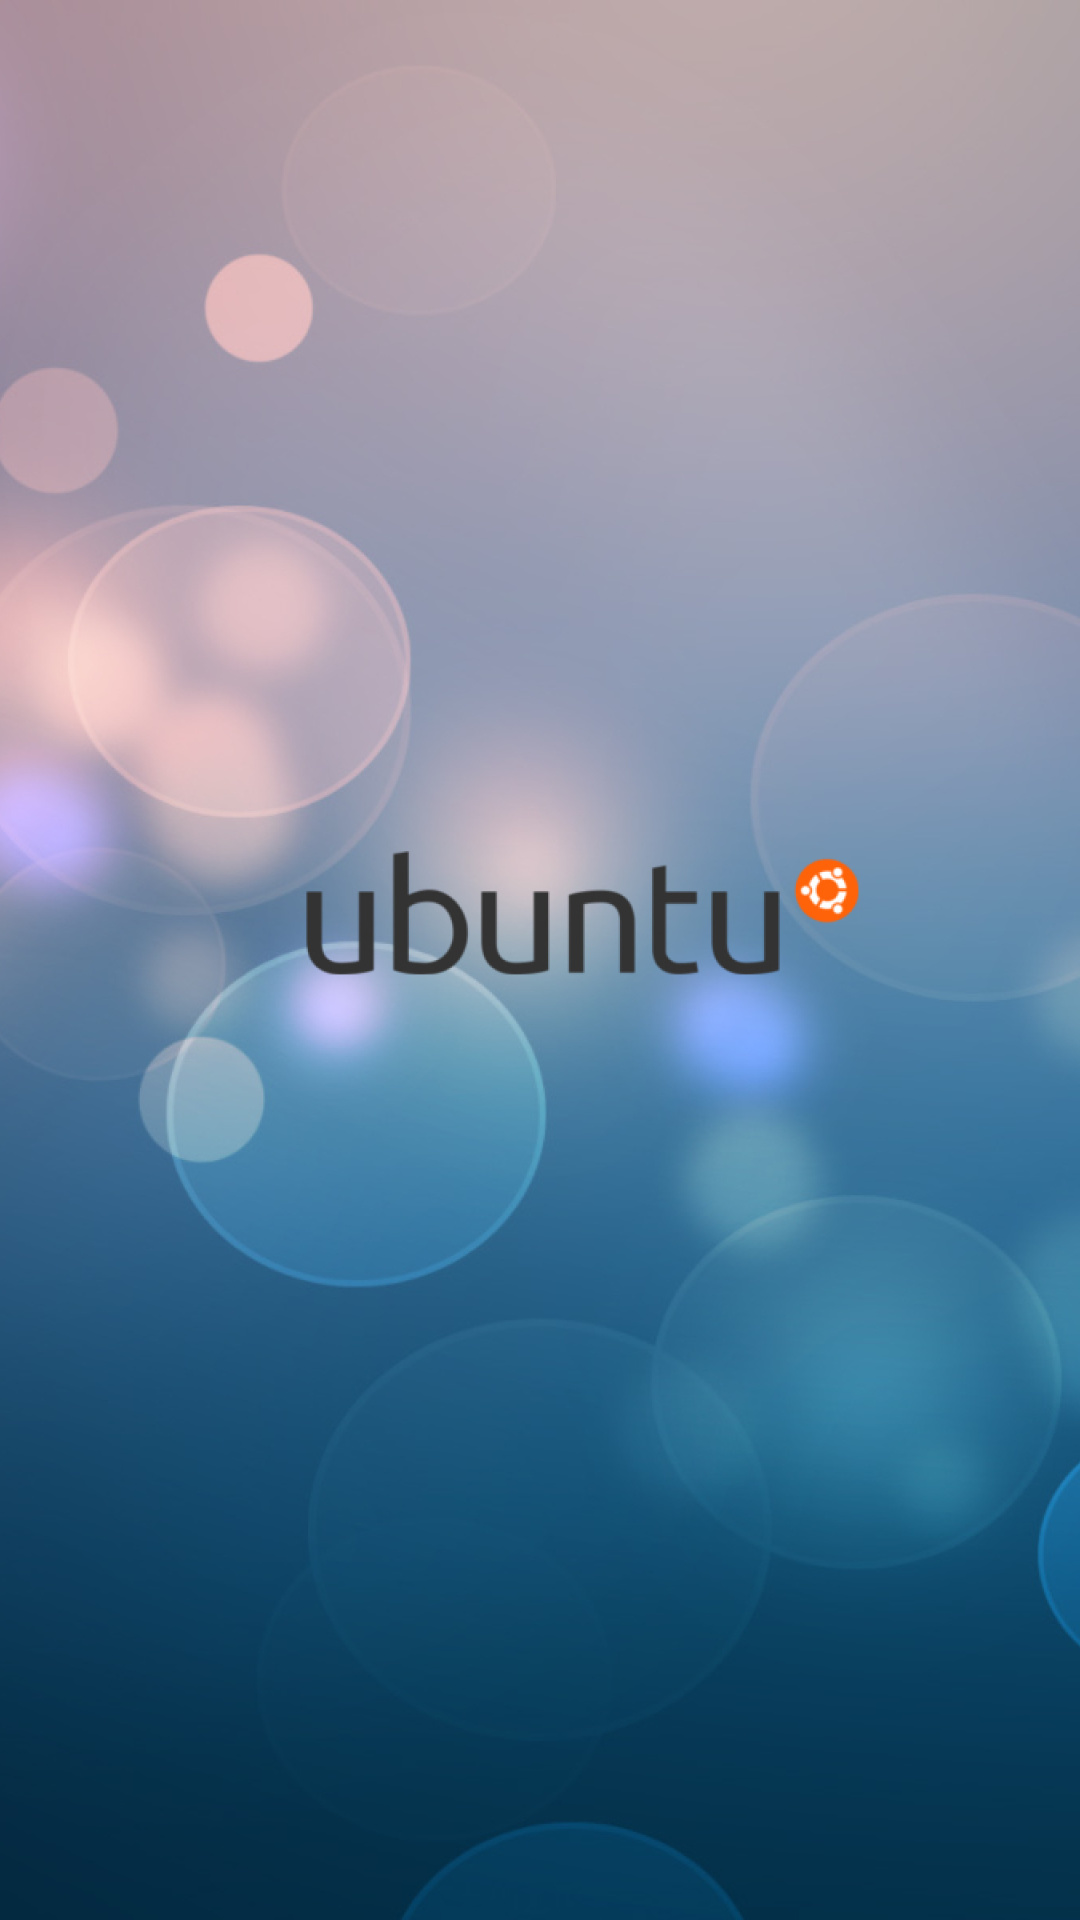 Ubuntu Linux screenshot #1 1080x1920